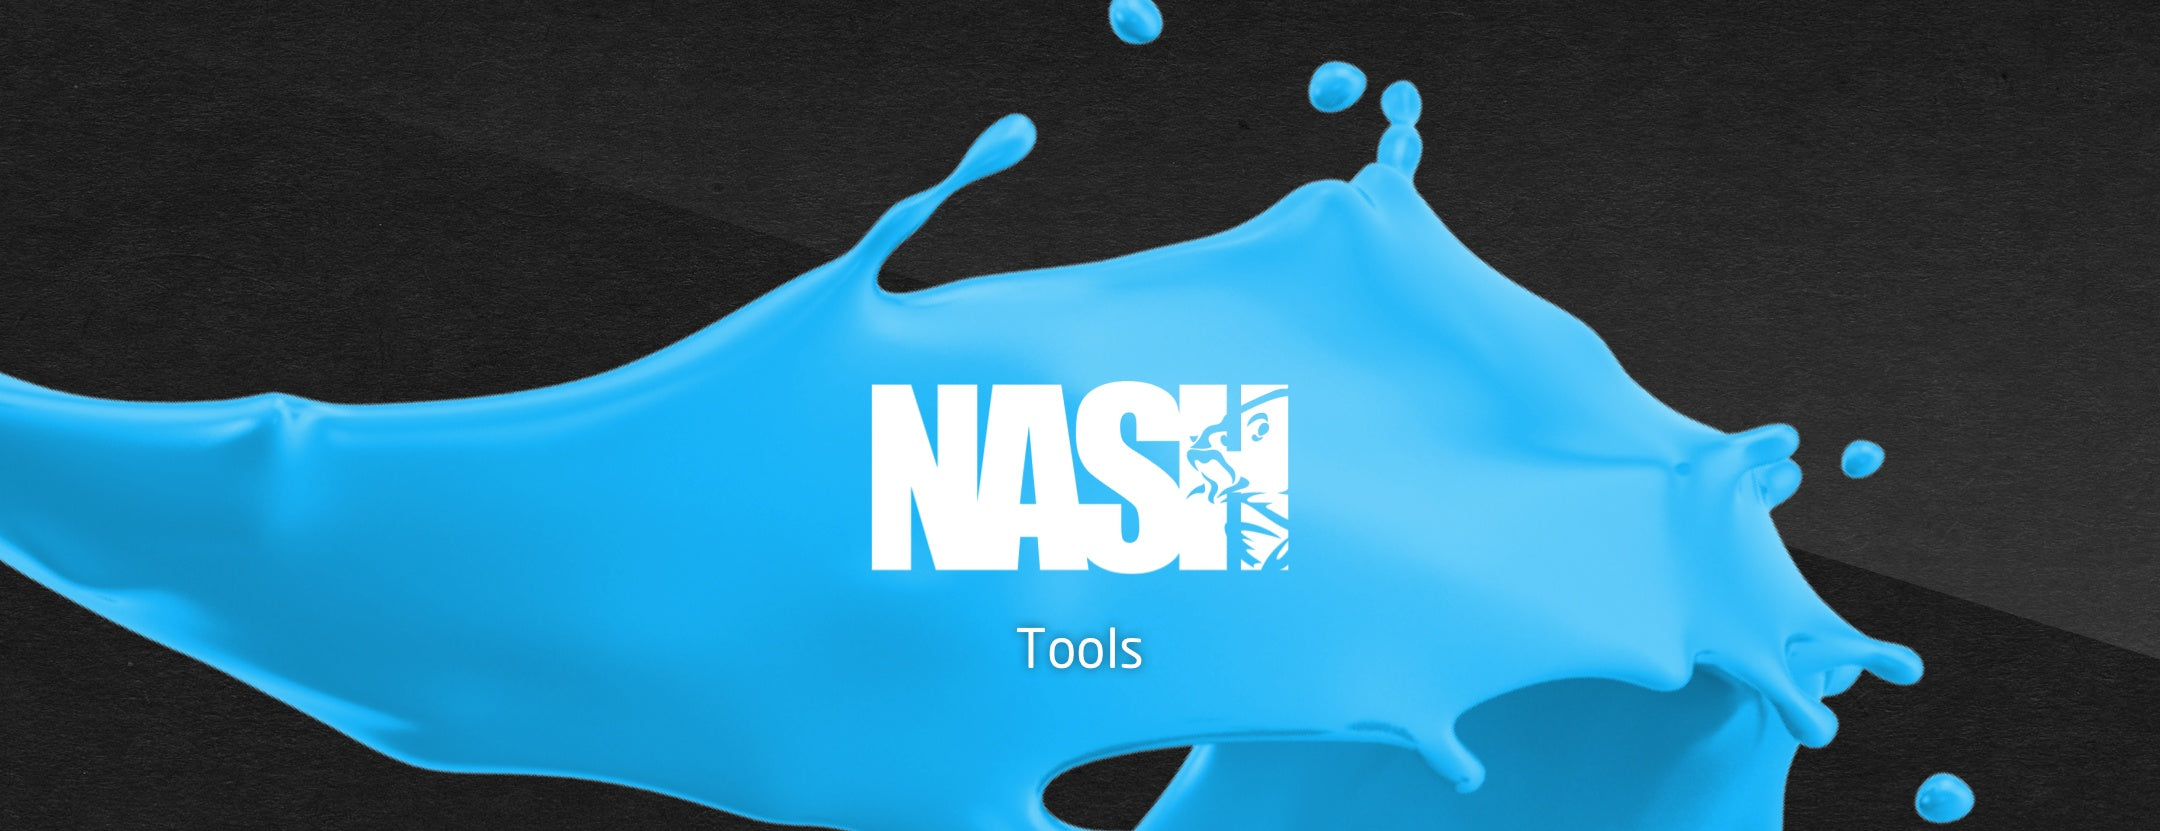 Nash-Tools